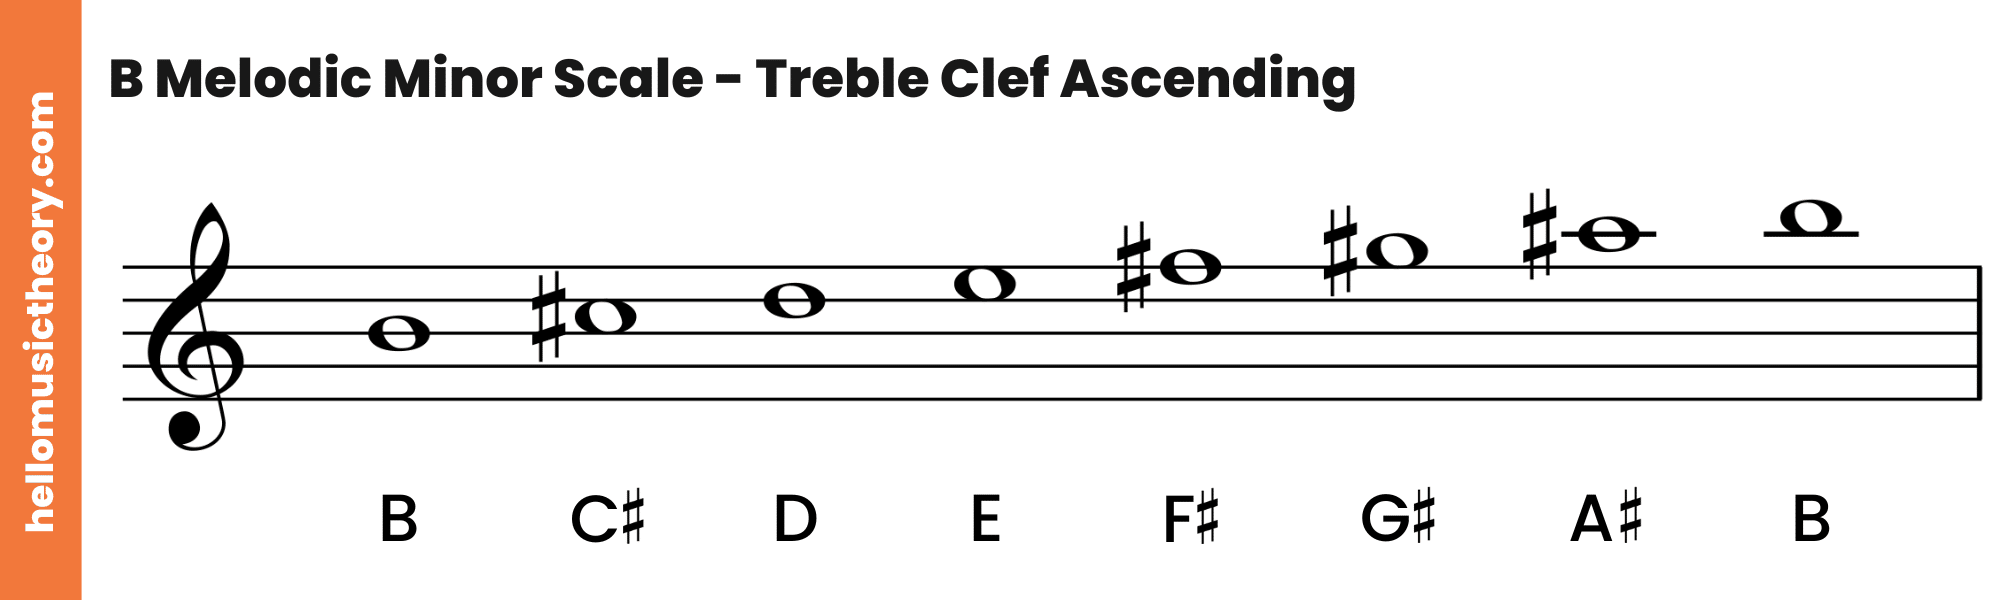 B Melodic Minor Scale Treble Clef Ascending